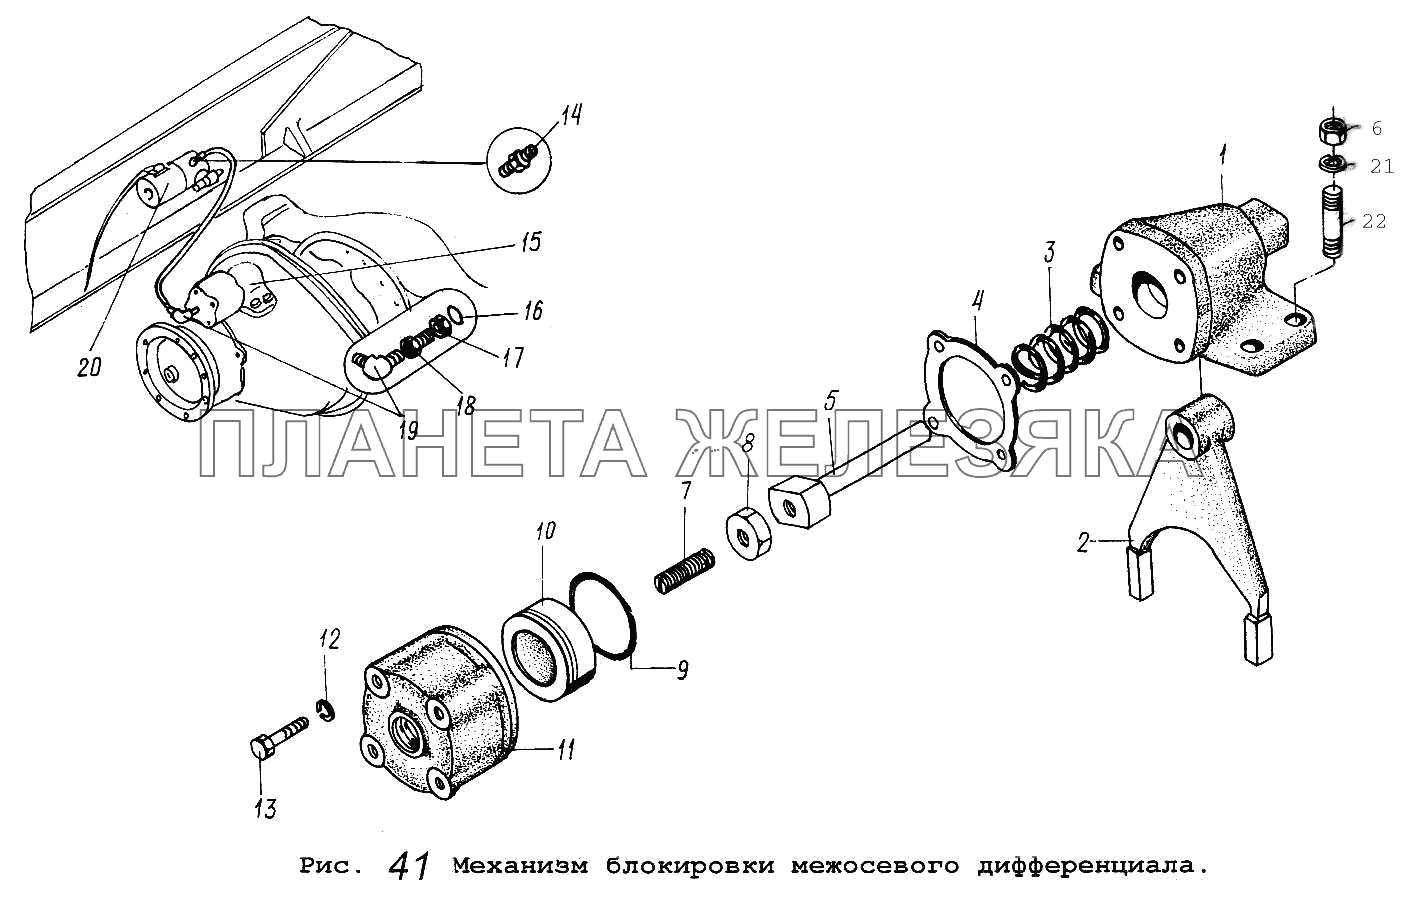 Механизм блокировки межосевого дифференциала МАЗ-5551